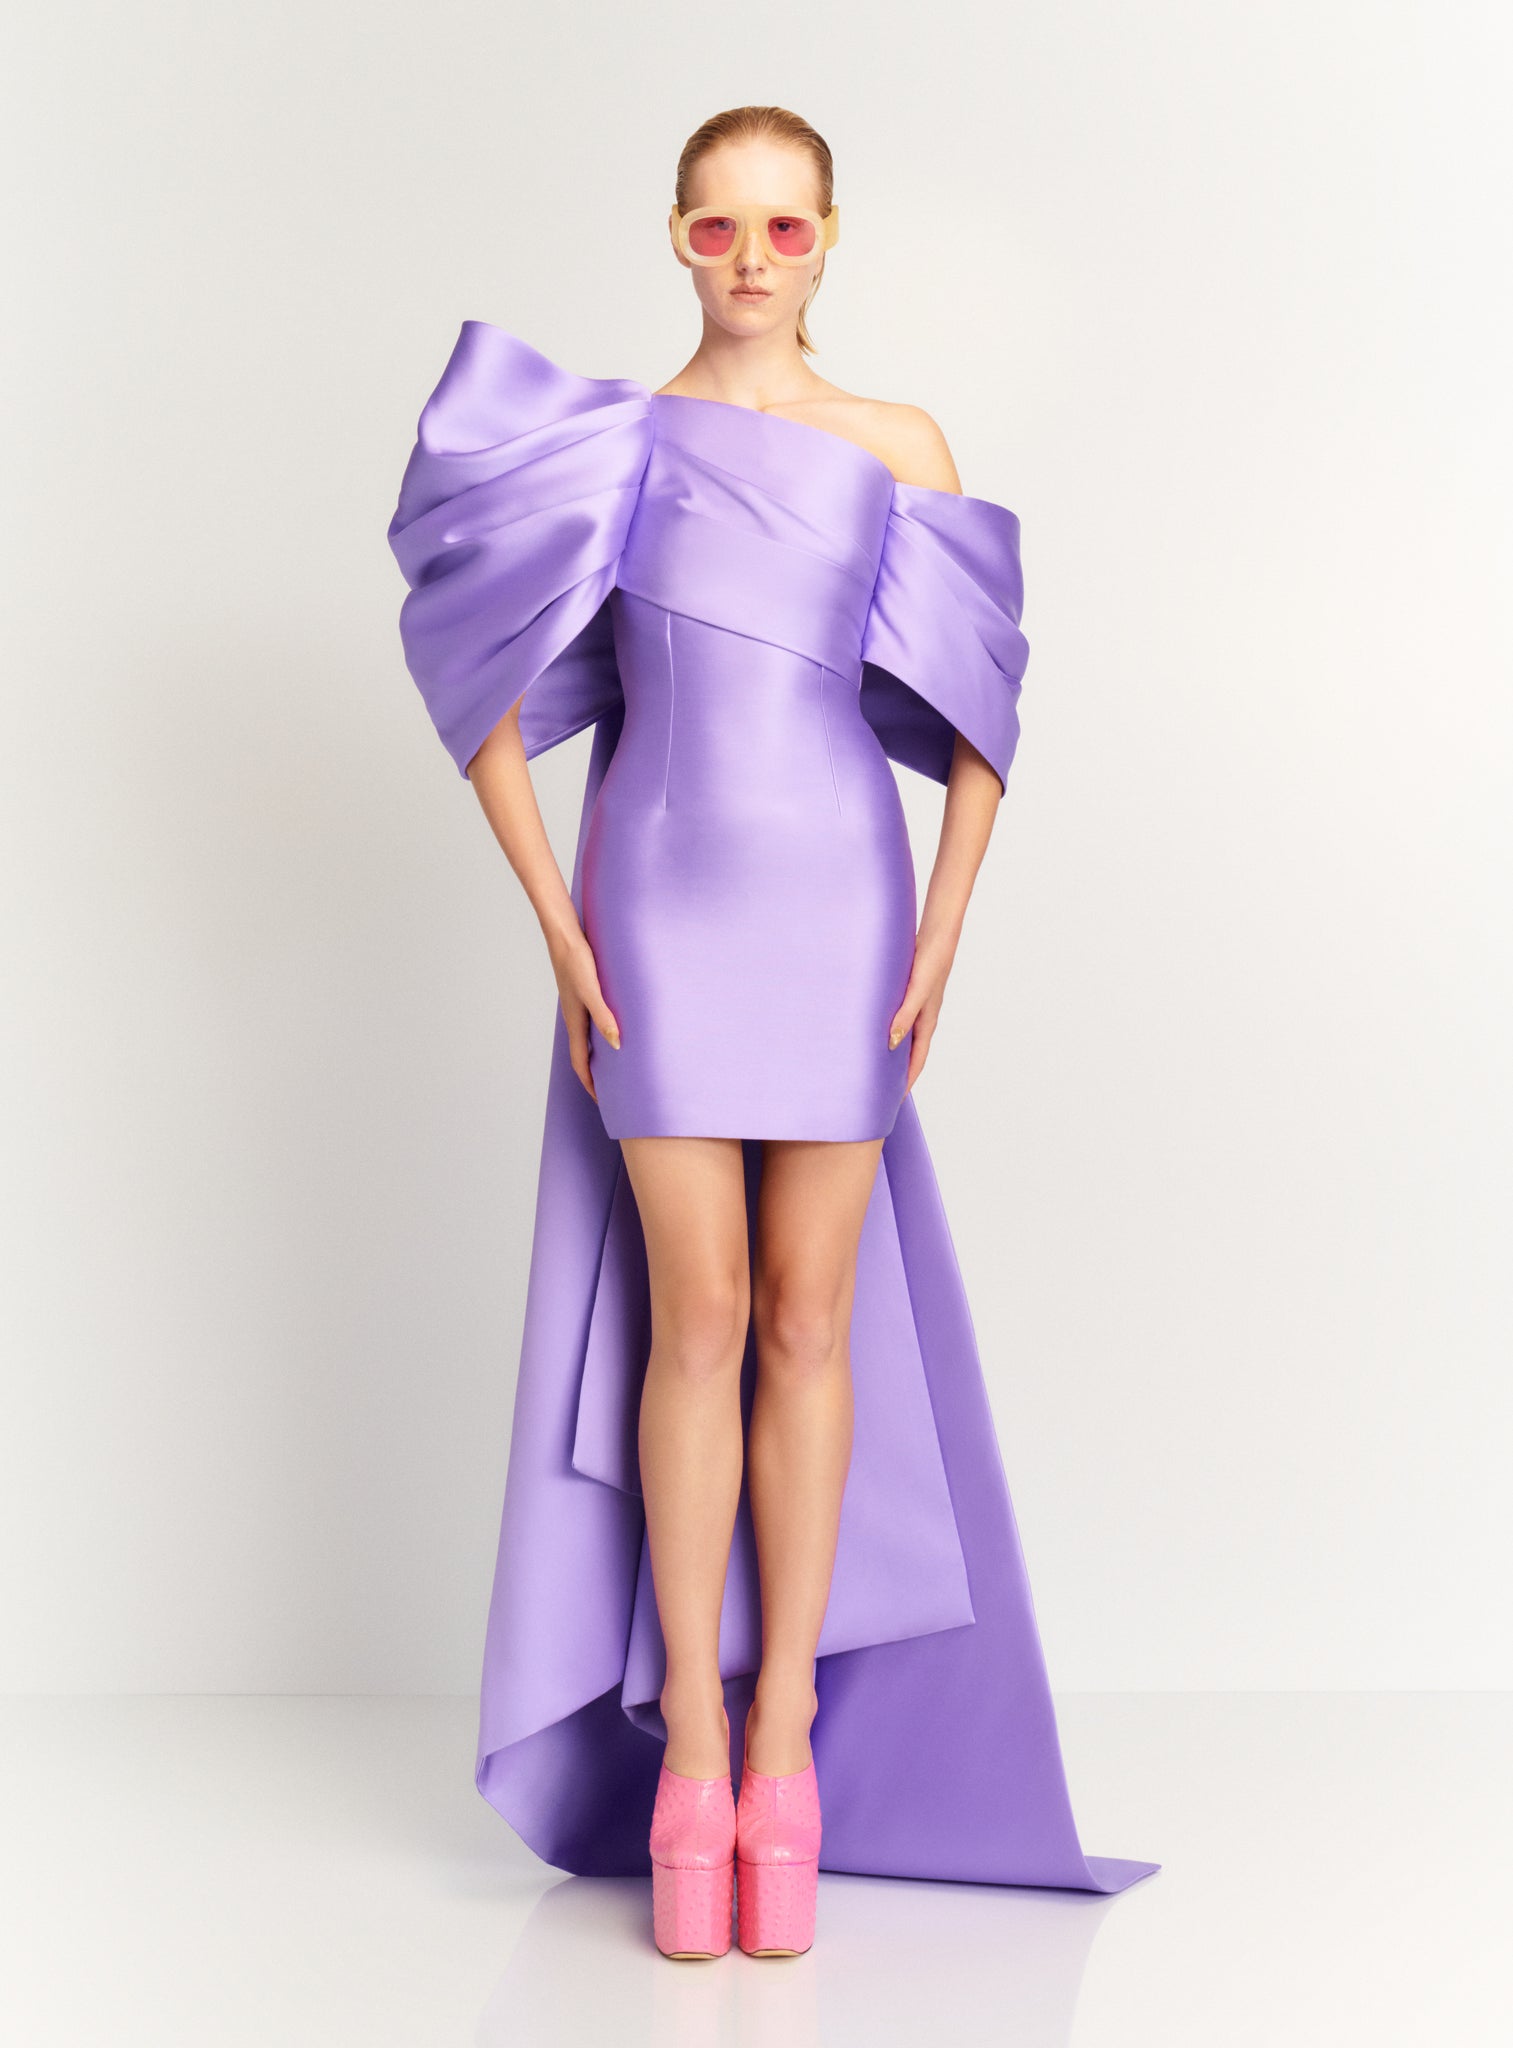 The Ula Mini Dress in Lilac